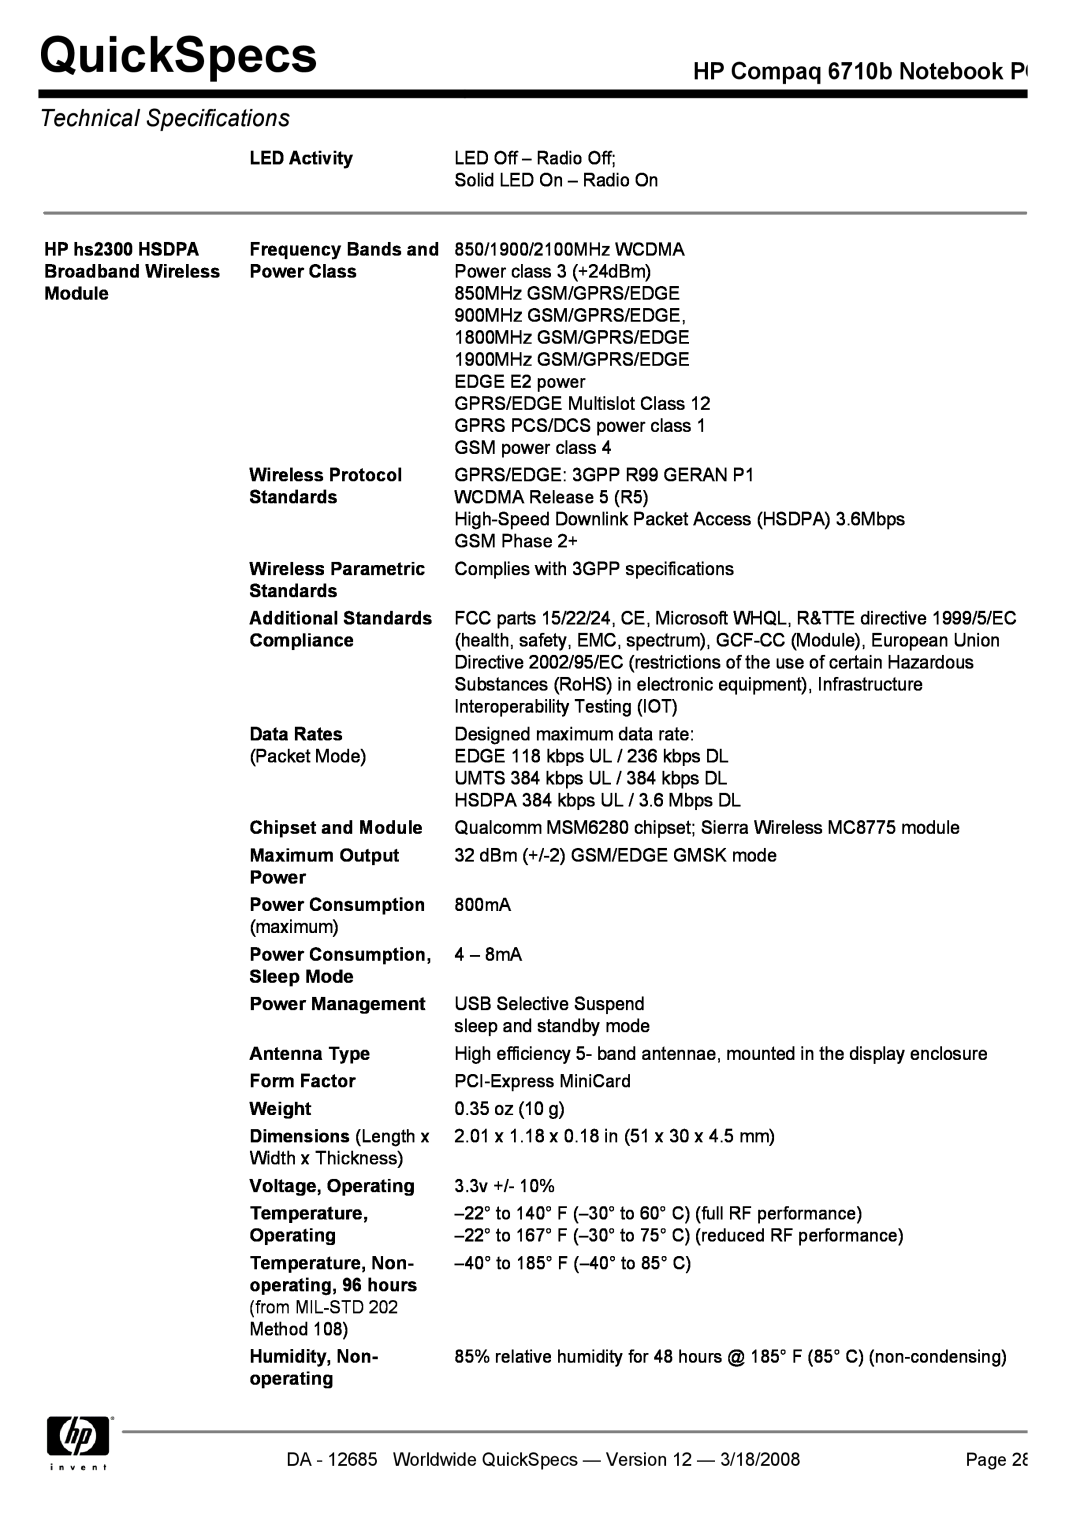 Compaq manual QuickSpecs, HP Compaq 6710b Notebook PC, Technical Specifications 